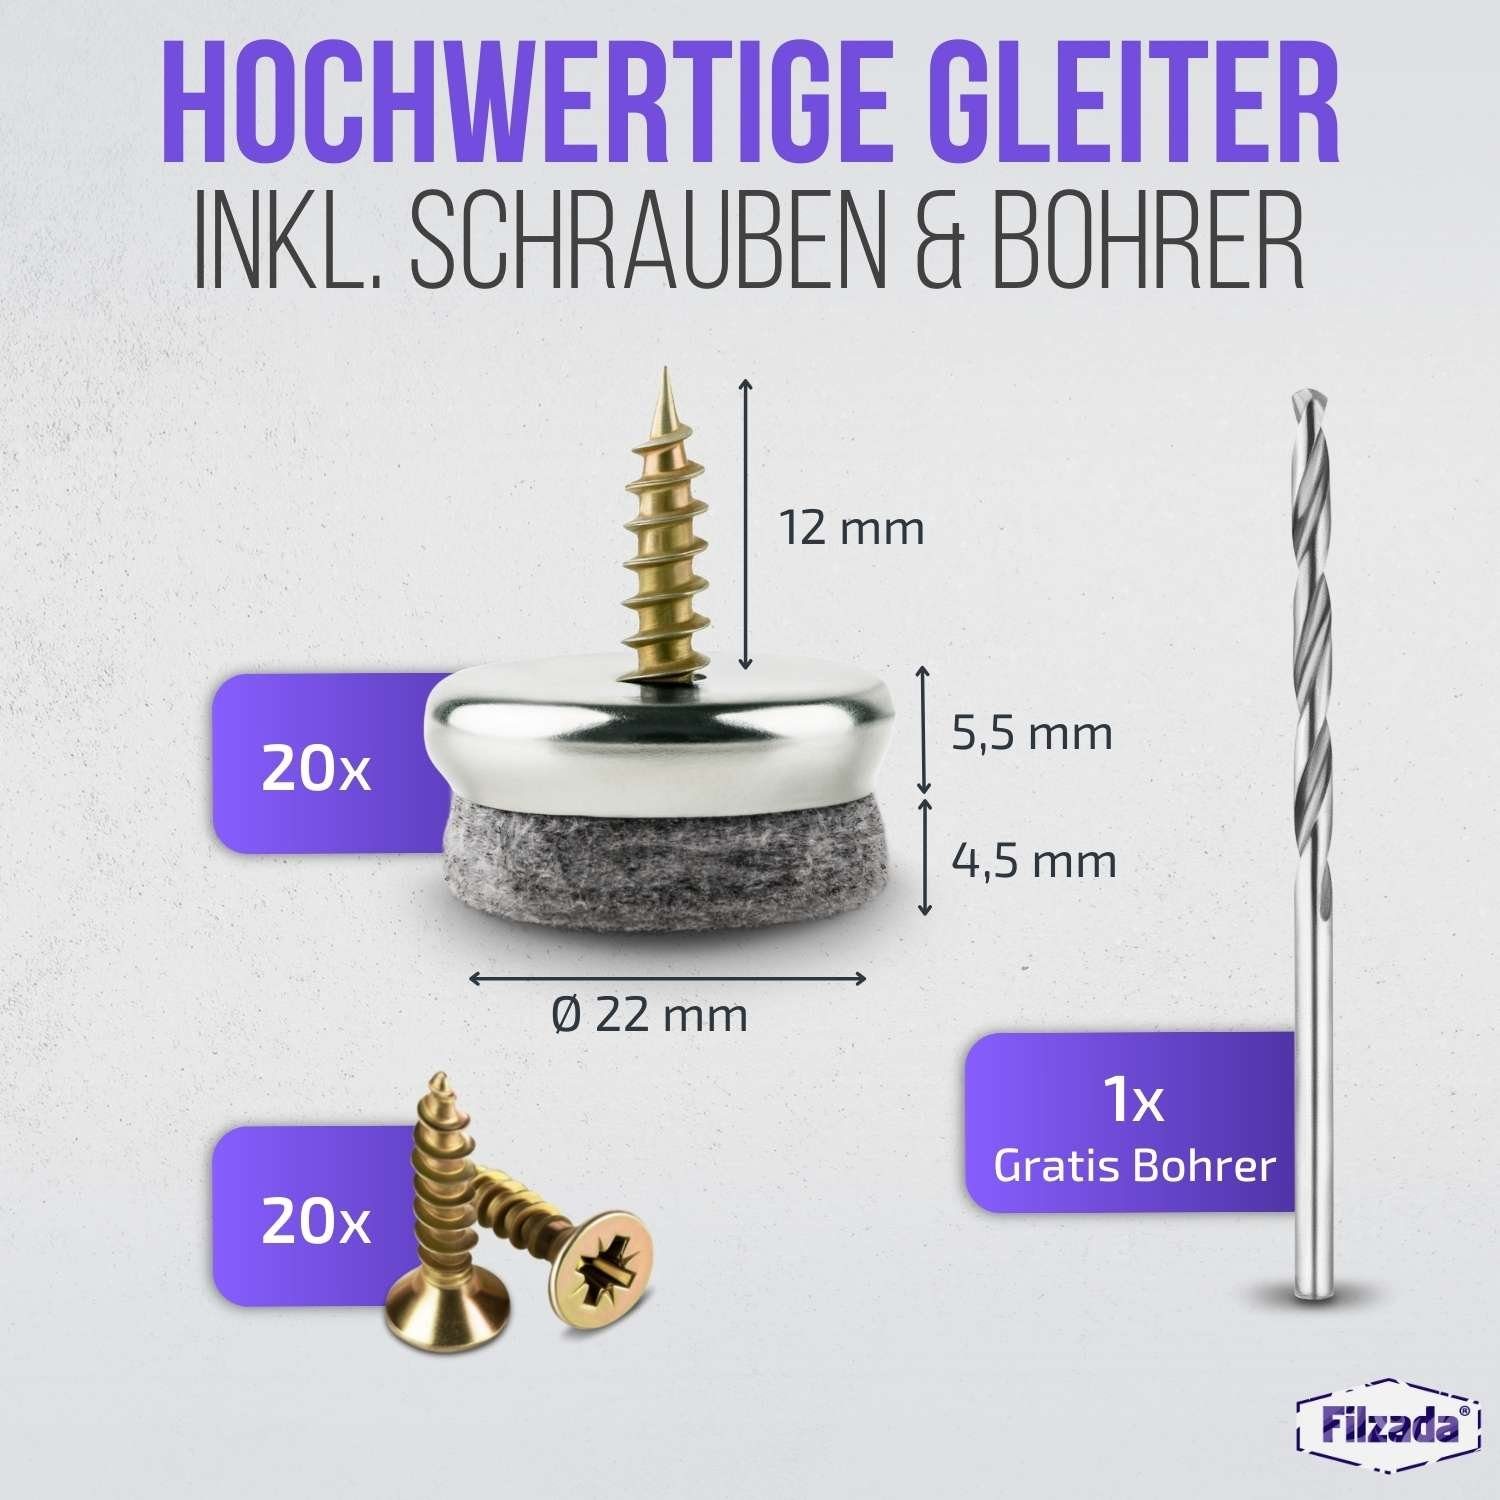 Schraube Profi Filzgleiter +Bohrer Filzgleiter Filzada 20x Ø22mm Stuhlgleiter Möbelgleiter